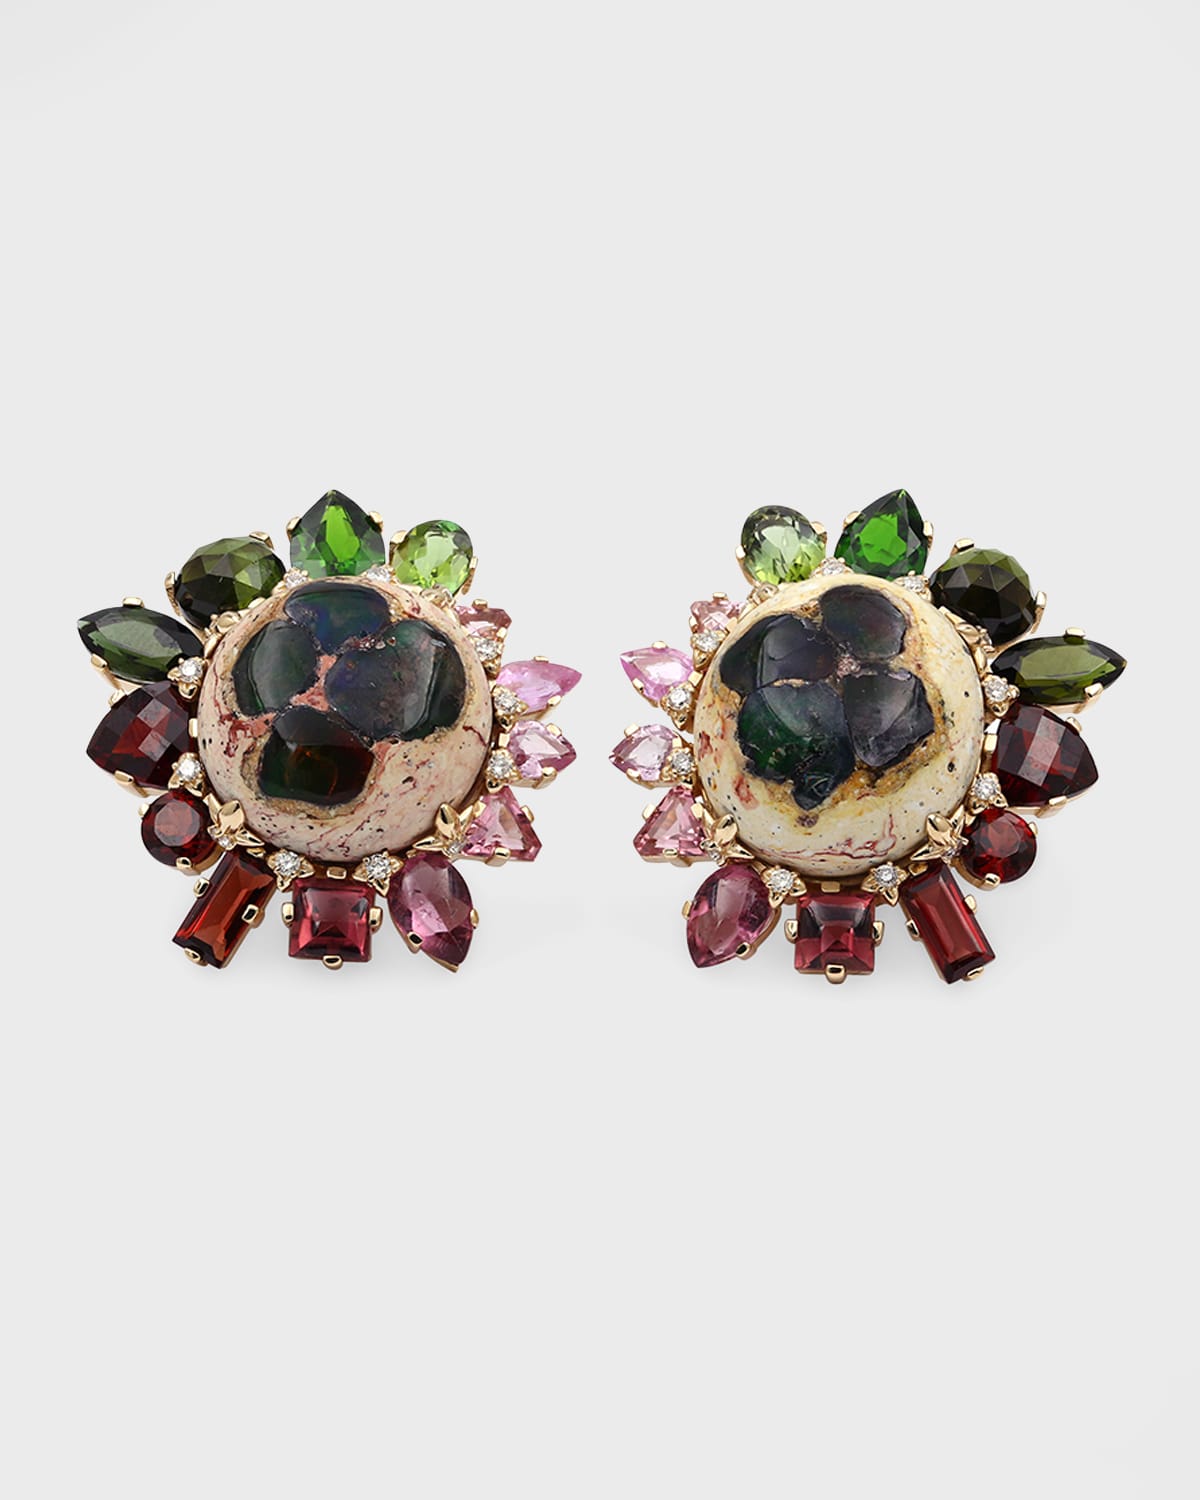 Opal in Matrix Mixed Gemstone Earrings